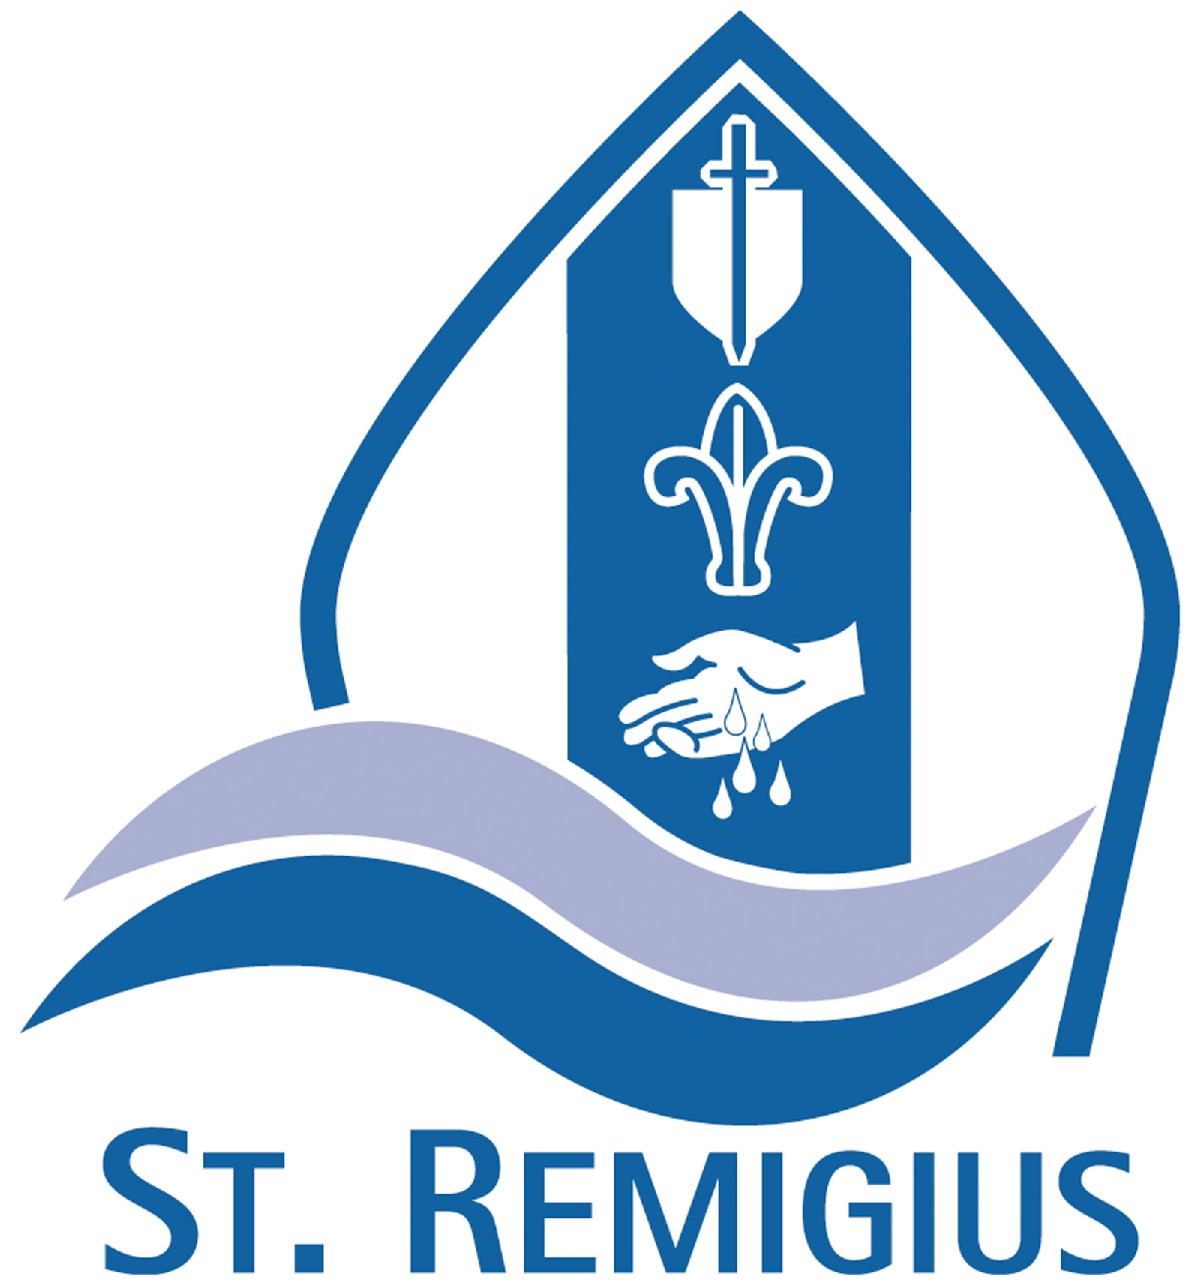 St. Remigius, Borken